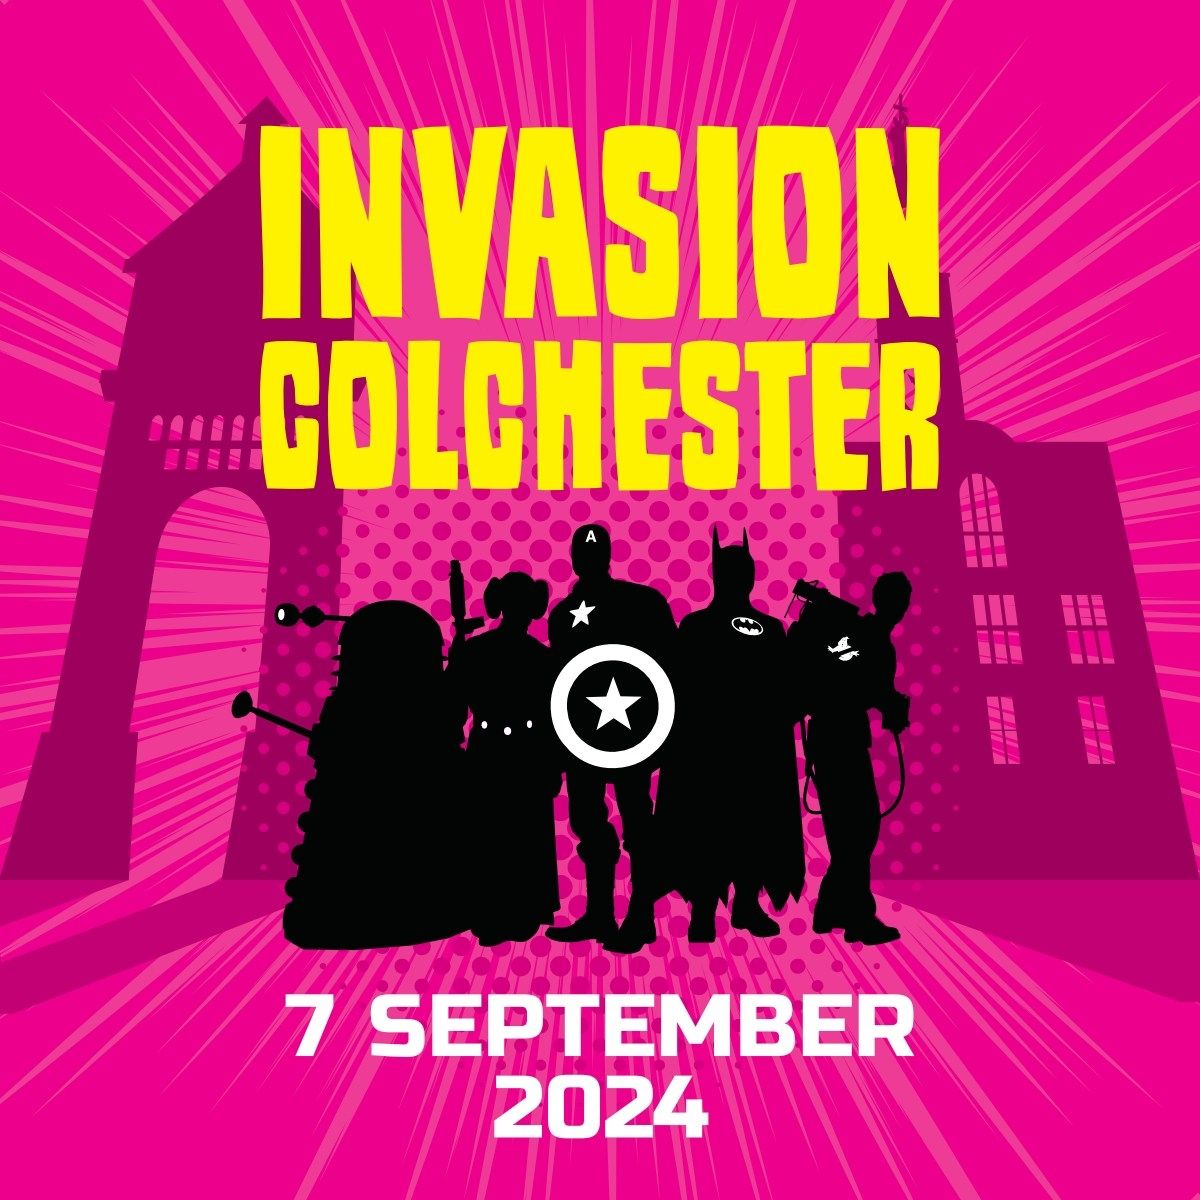 Invasion Colchester 